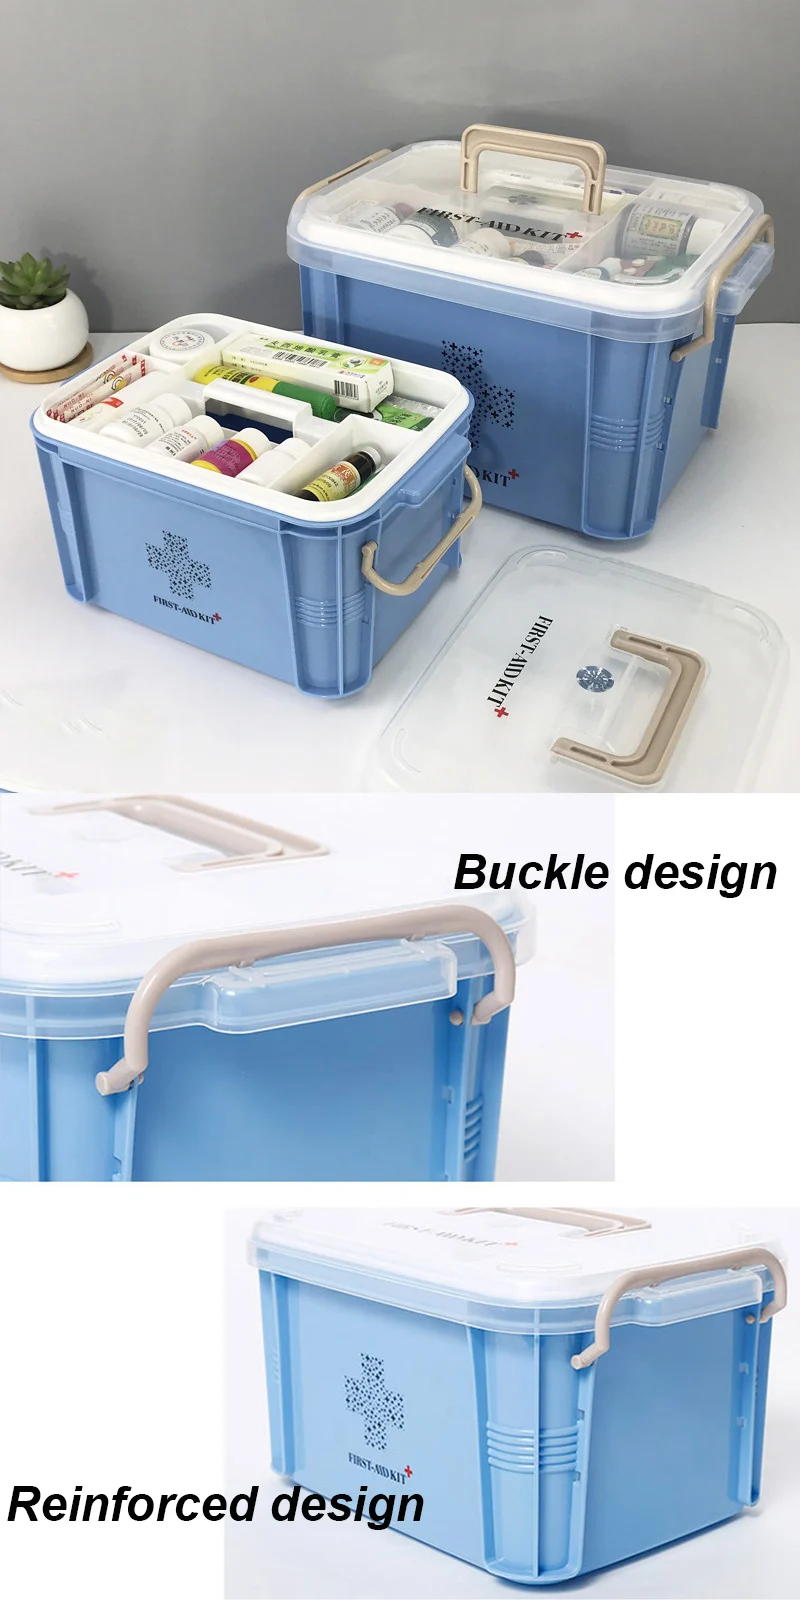 Пластиковый медицинский набор первой помощи UNTIOR, многослойный с ручкой, органайзер для лекарств, коробки, портативное уплотнение, бытовая медицинская коробка для хранения